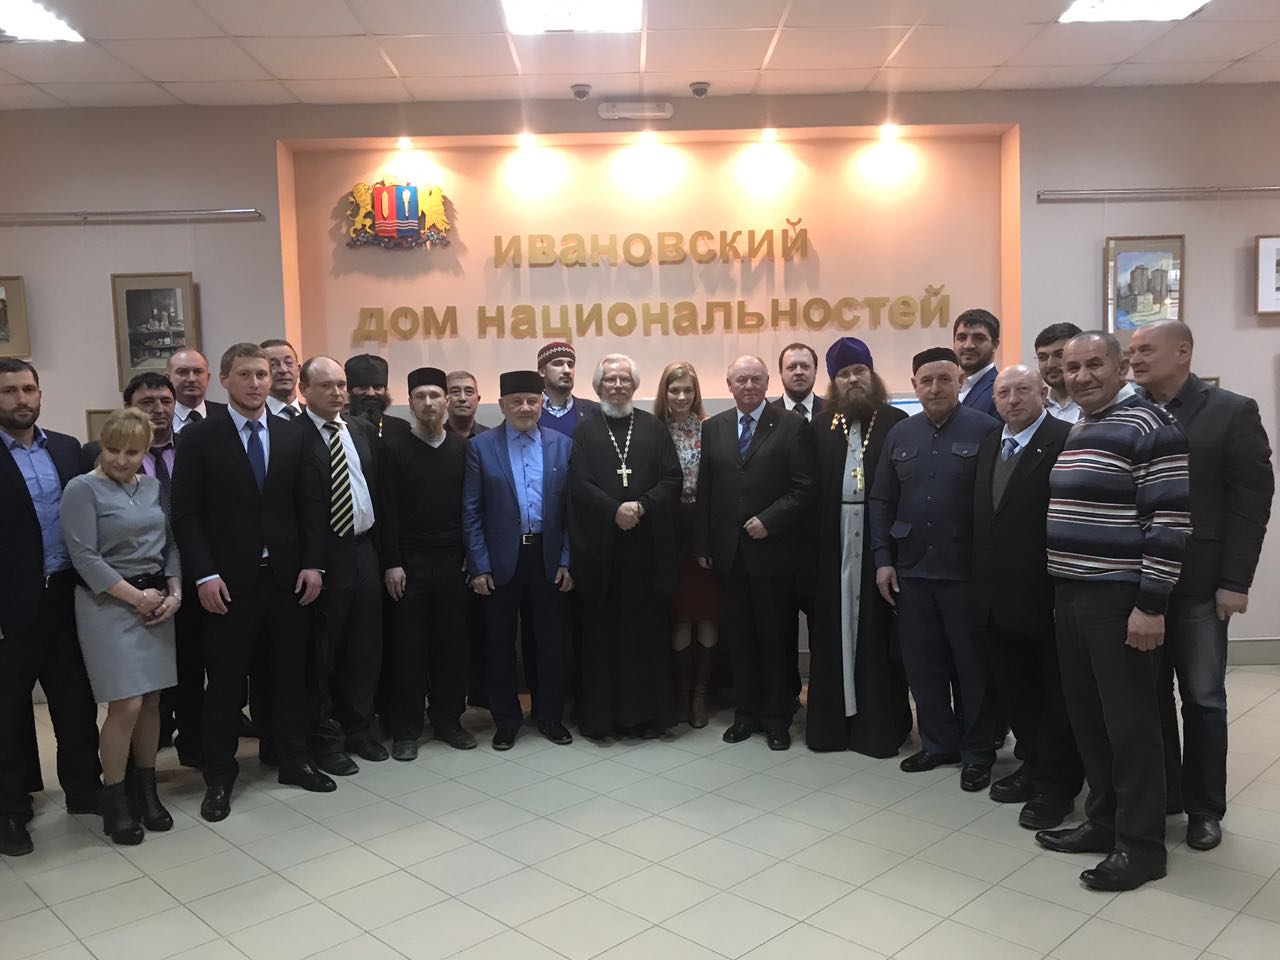 22 апреля в Ивановском доме национальностей прошел круглый стол «Религии против террора»